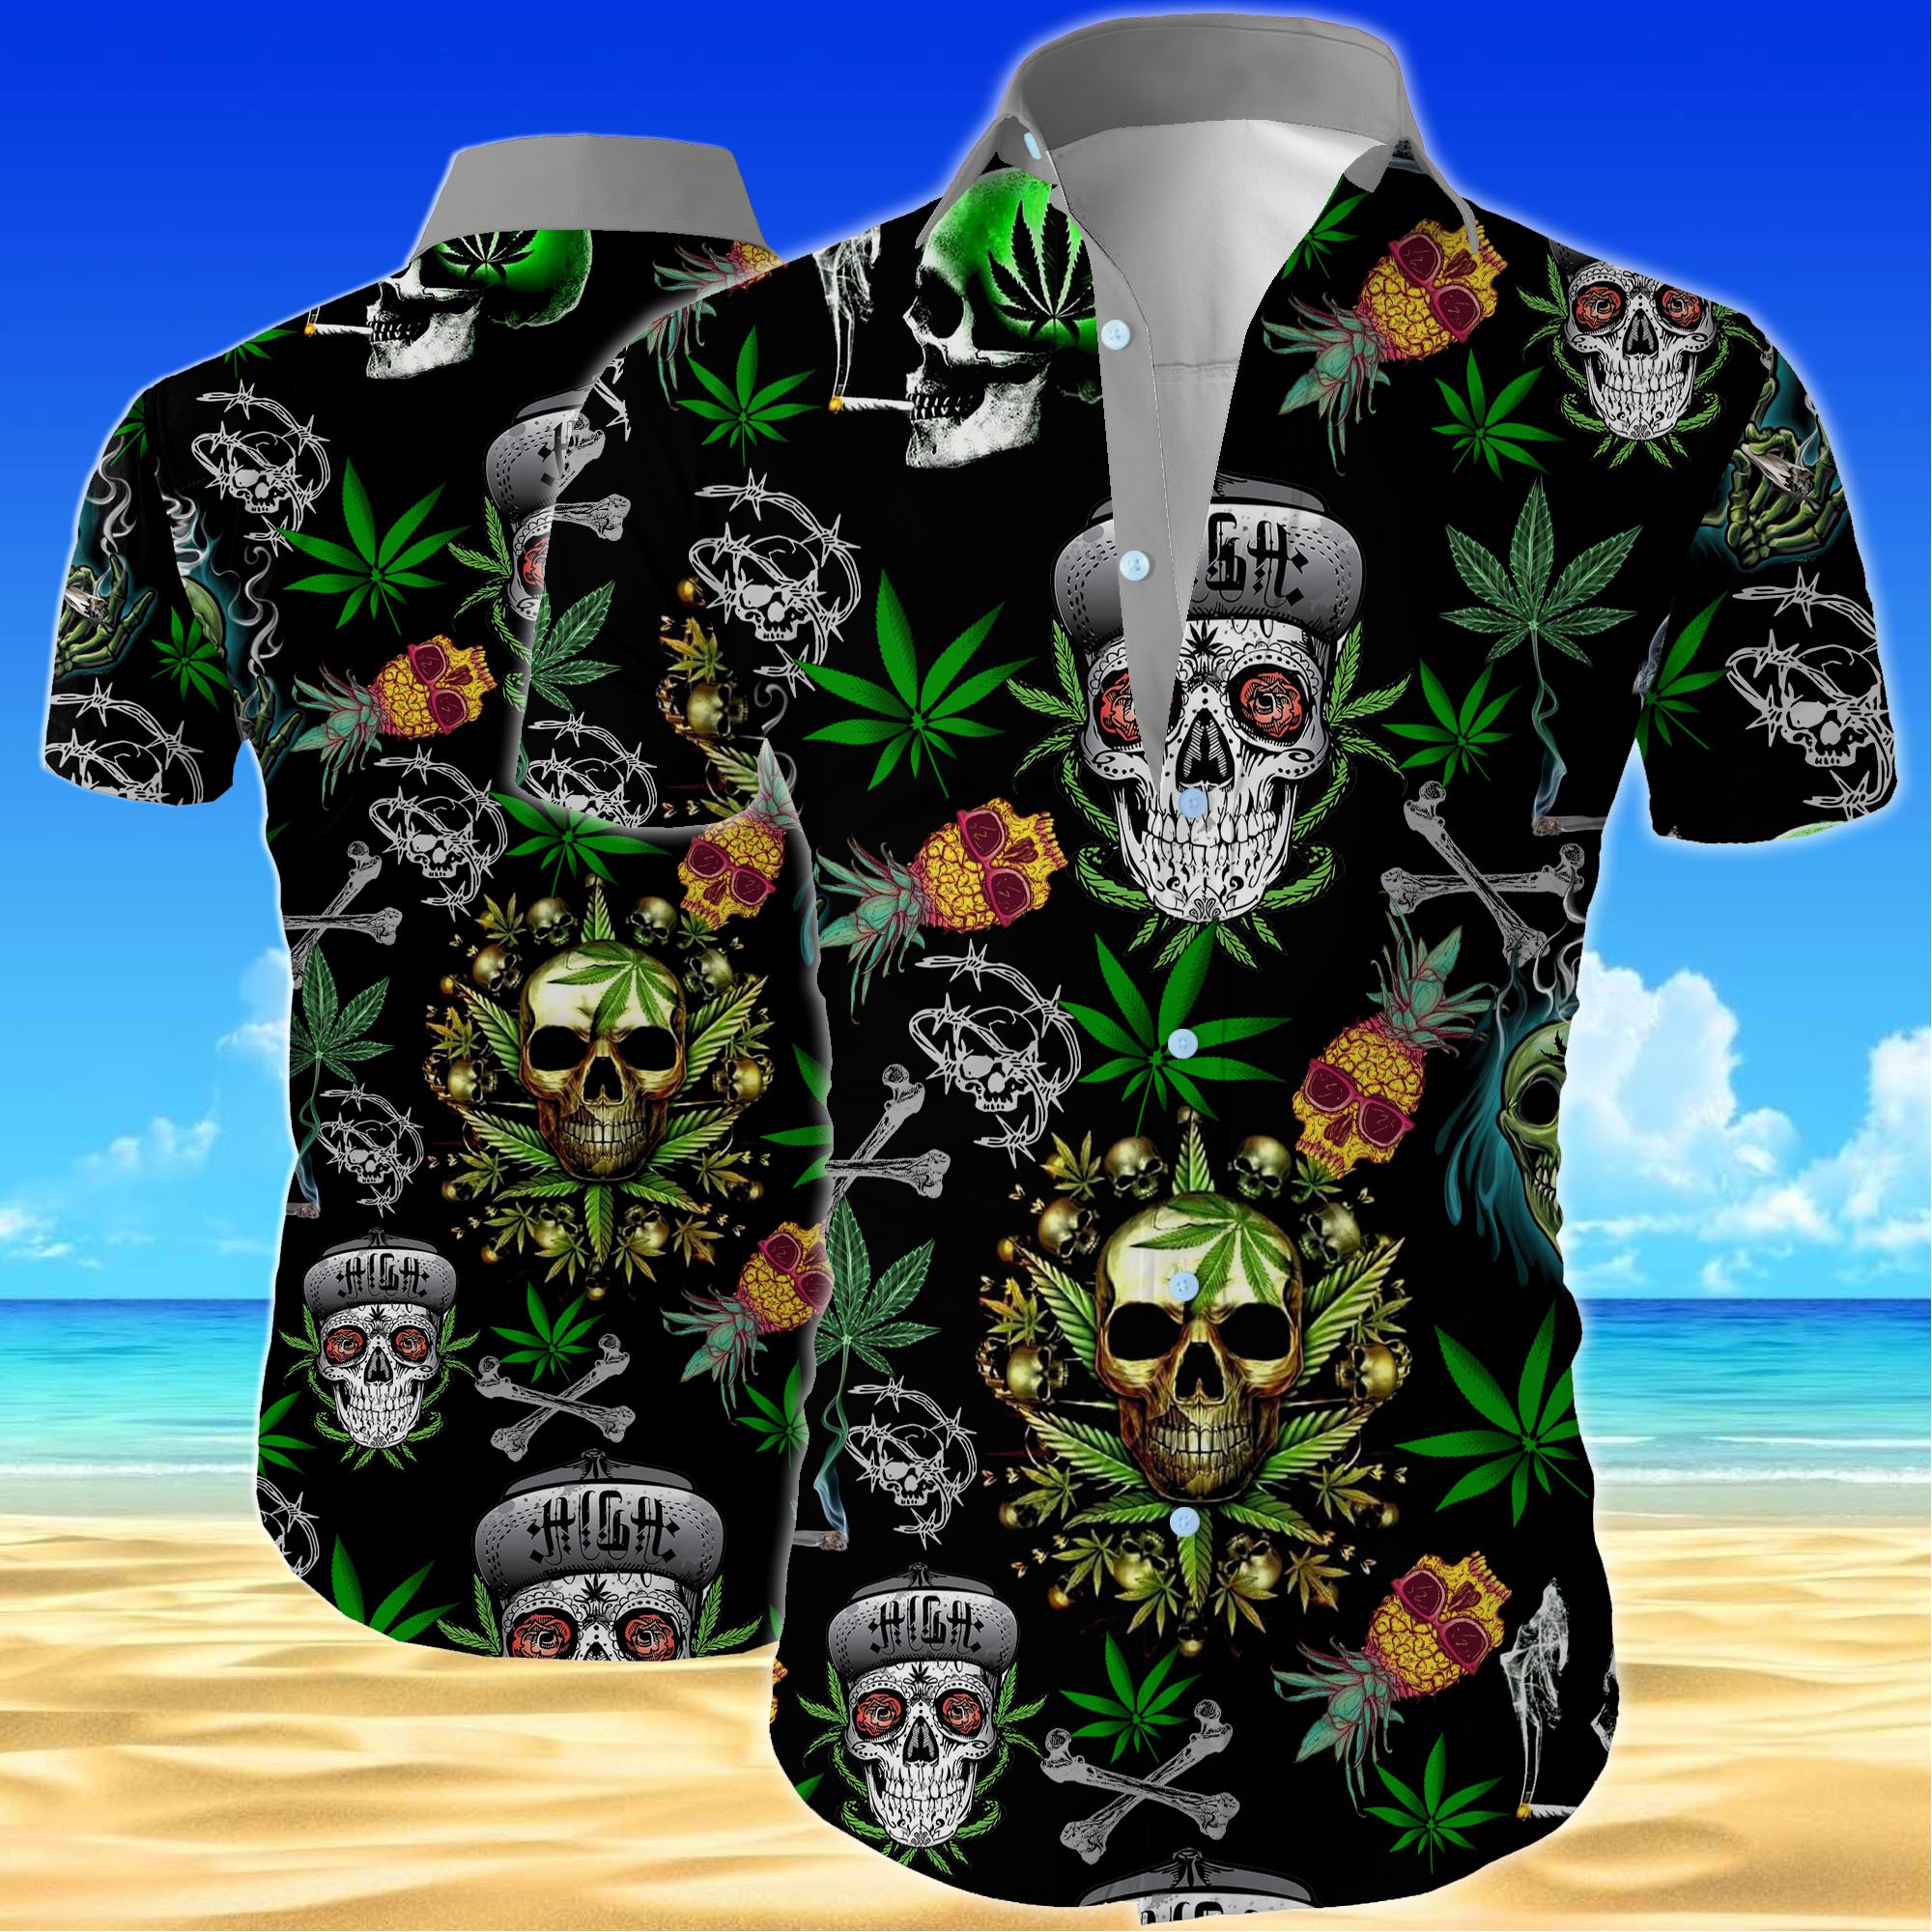 Skull cannabis all over printed hawaiian shirt